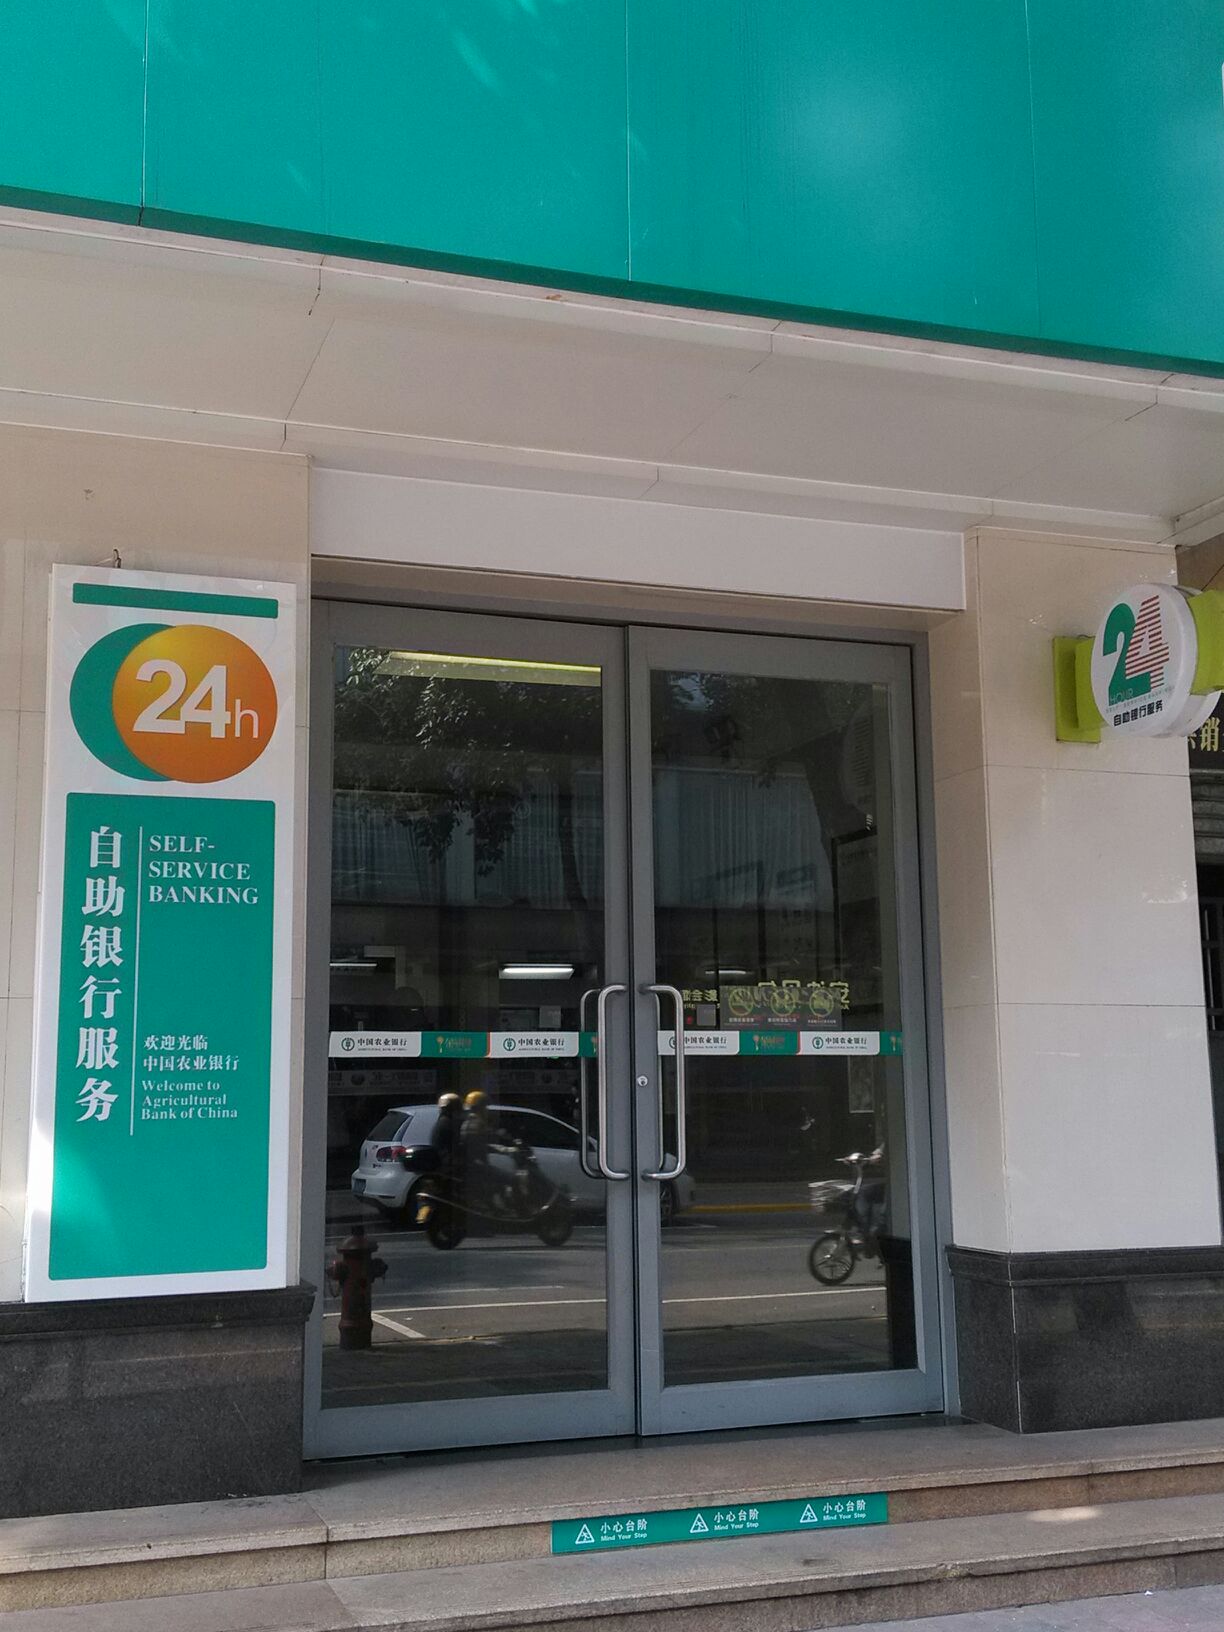 中國農業銀行24小時自助銀行(中山郊區支行)